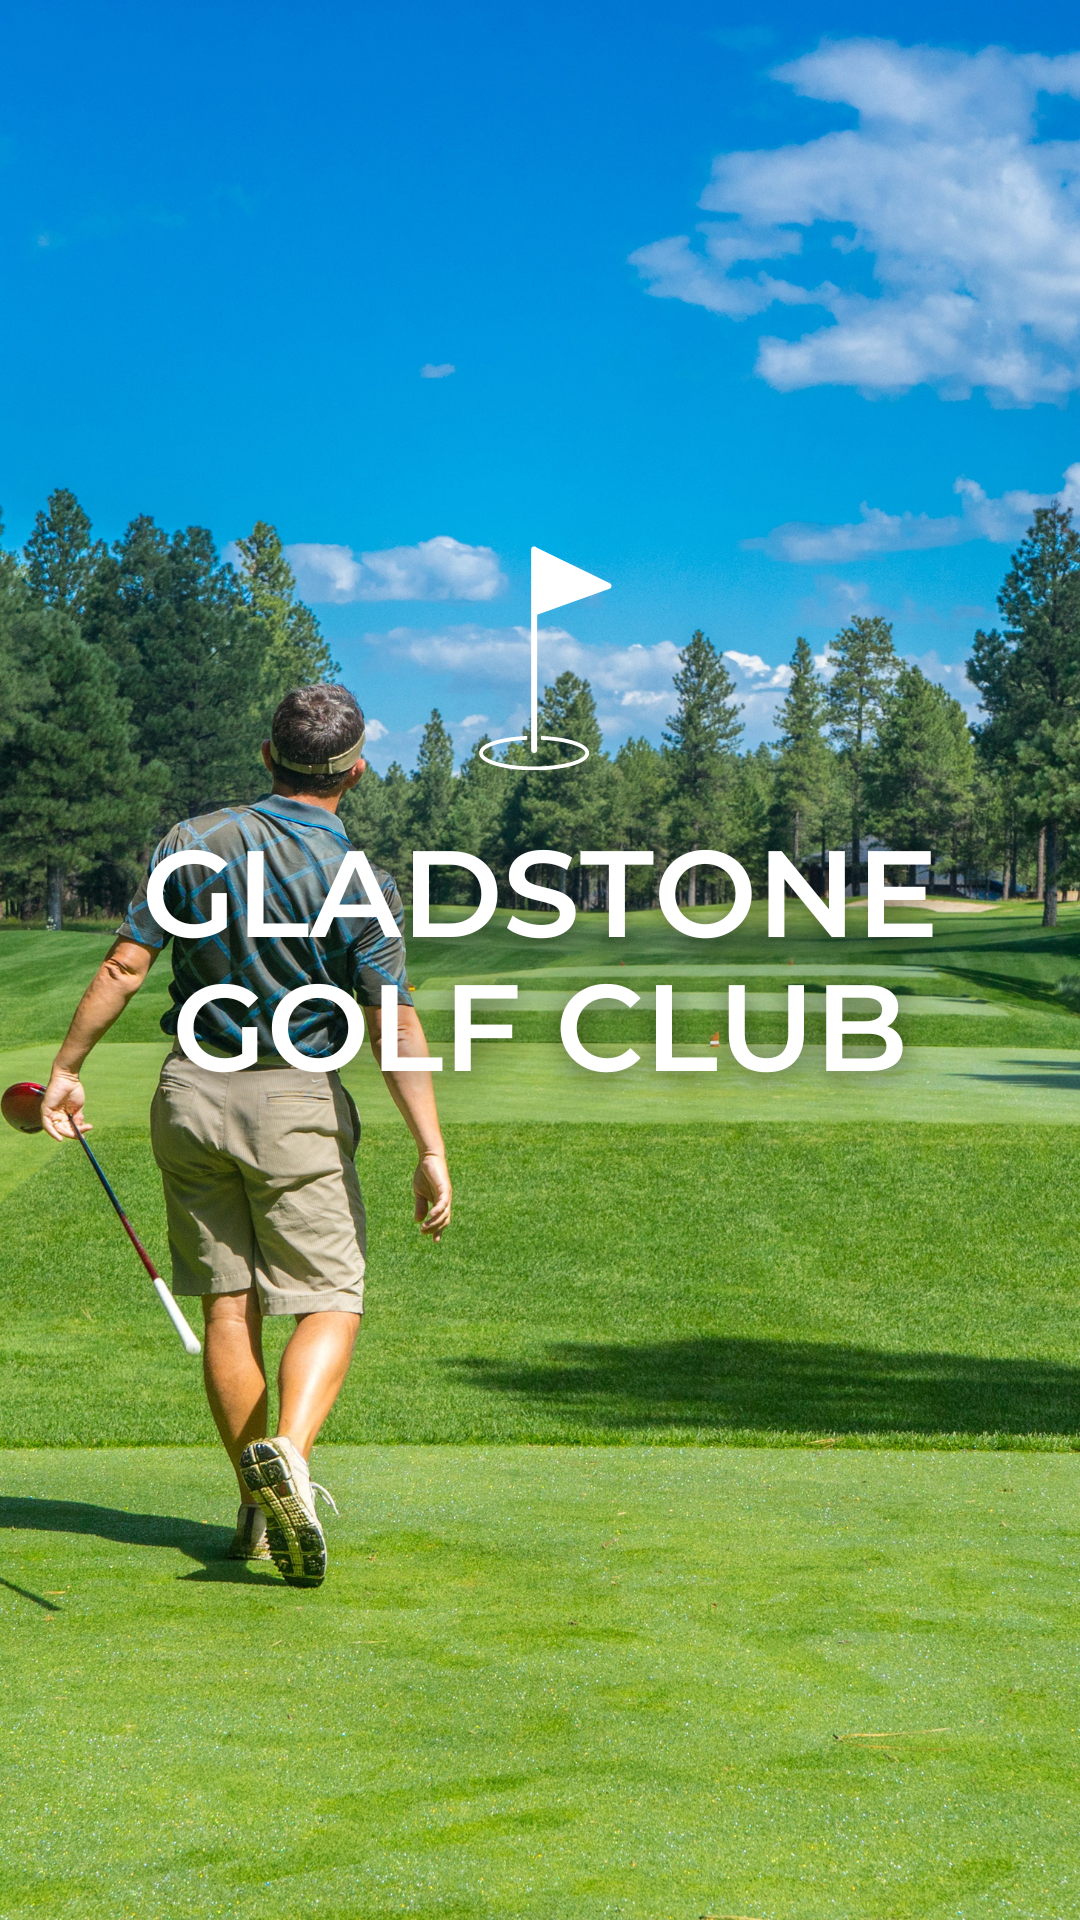 Gladstone Golf Club